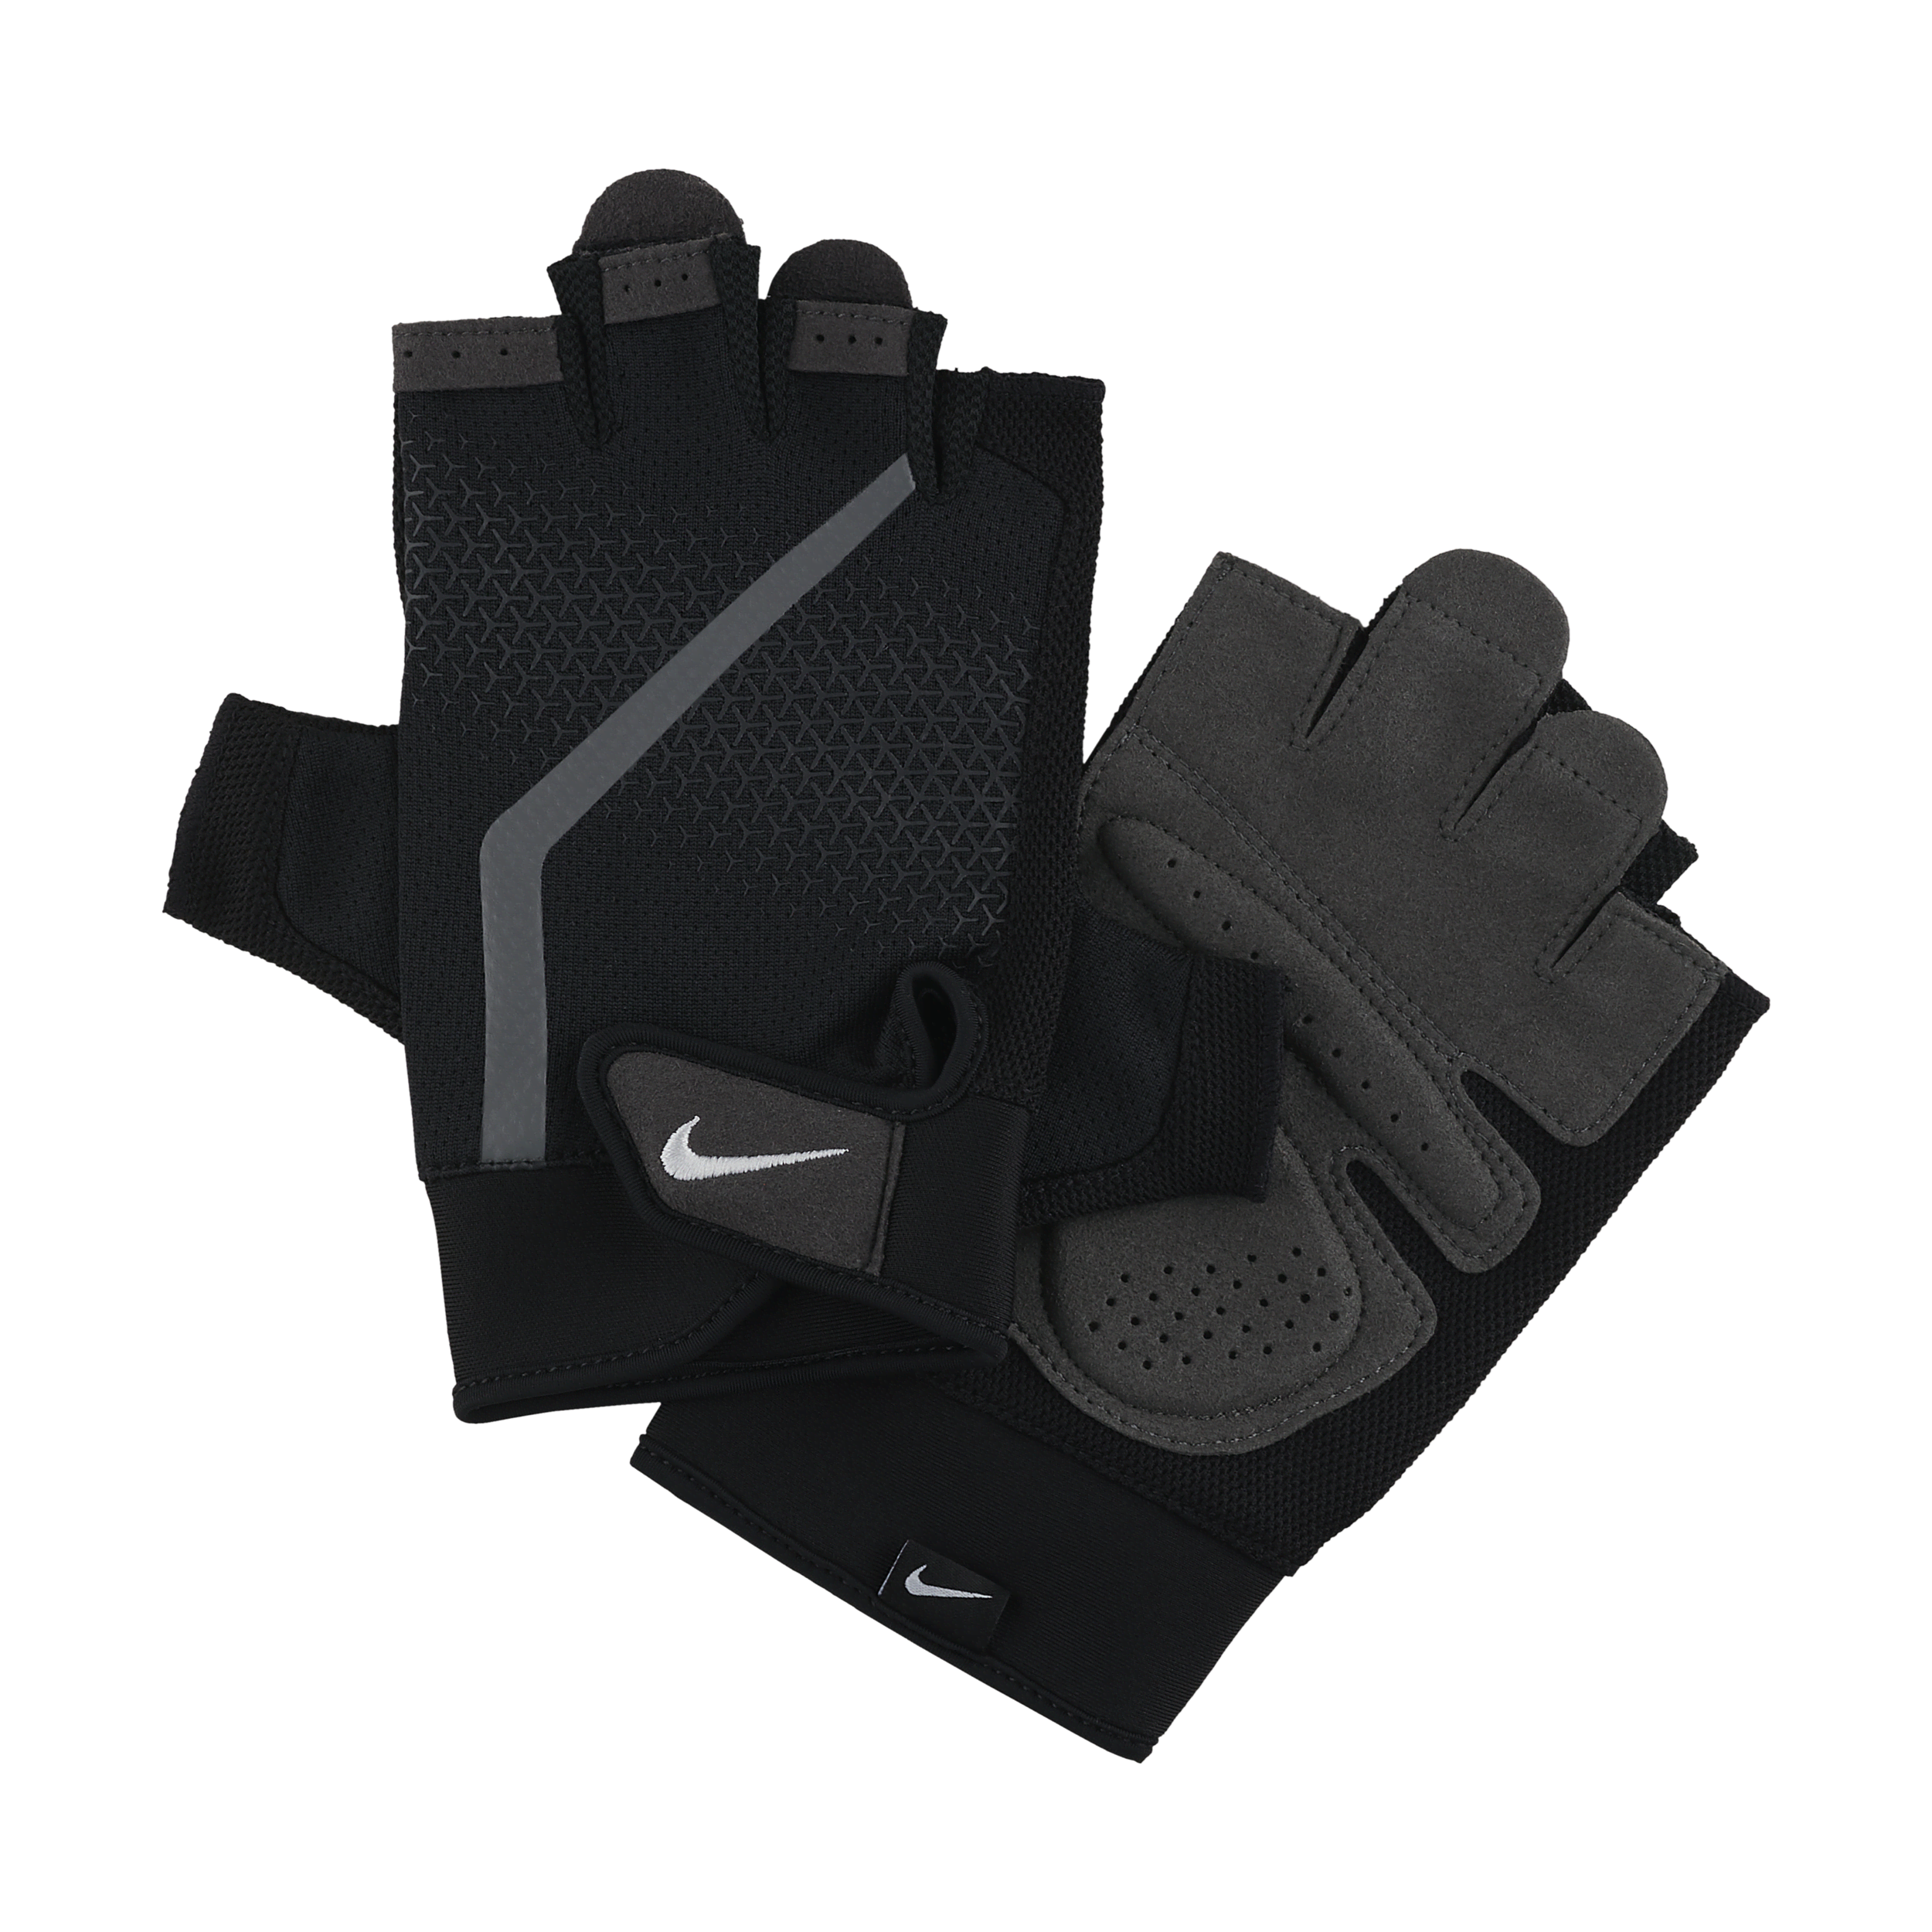 Męskie rękawice treningowe Nike Extreme - Wielokolorowe